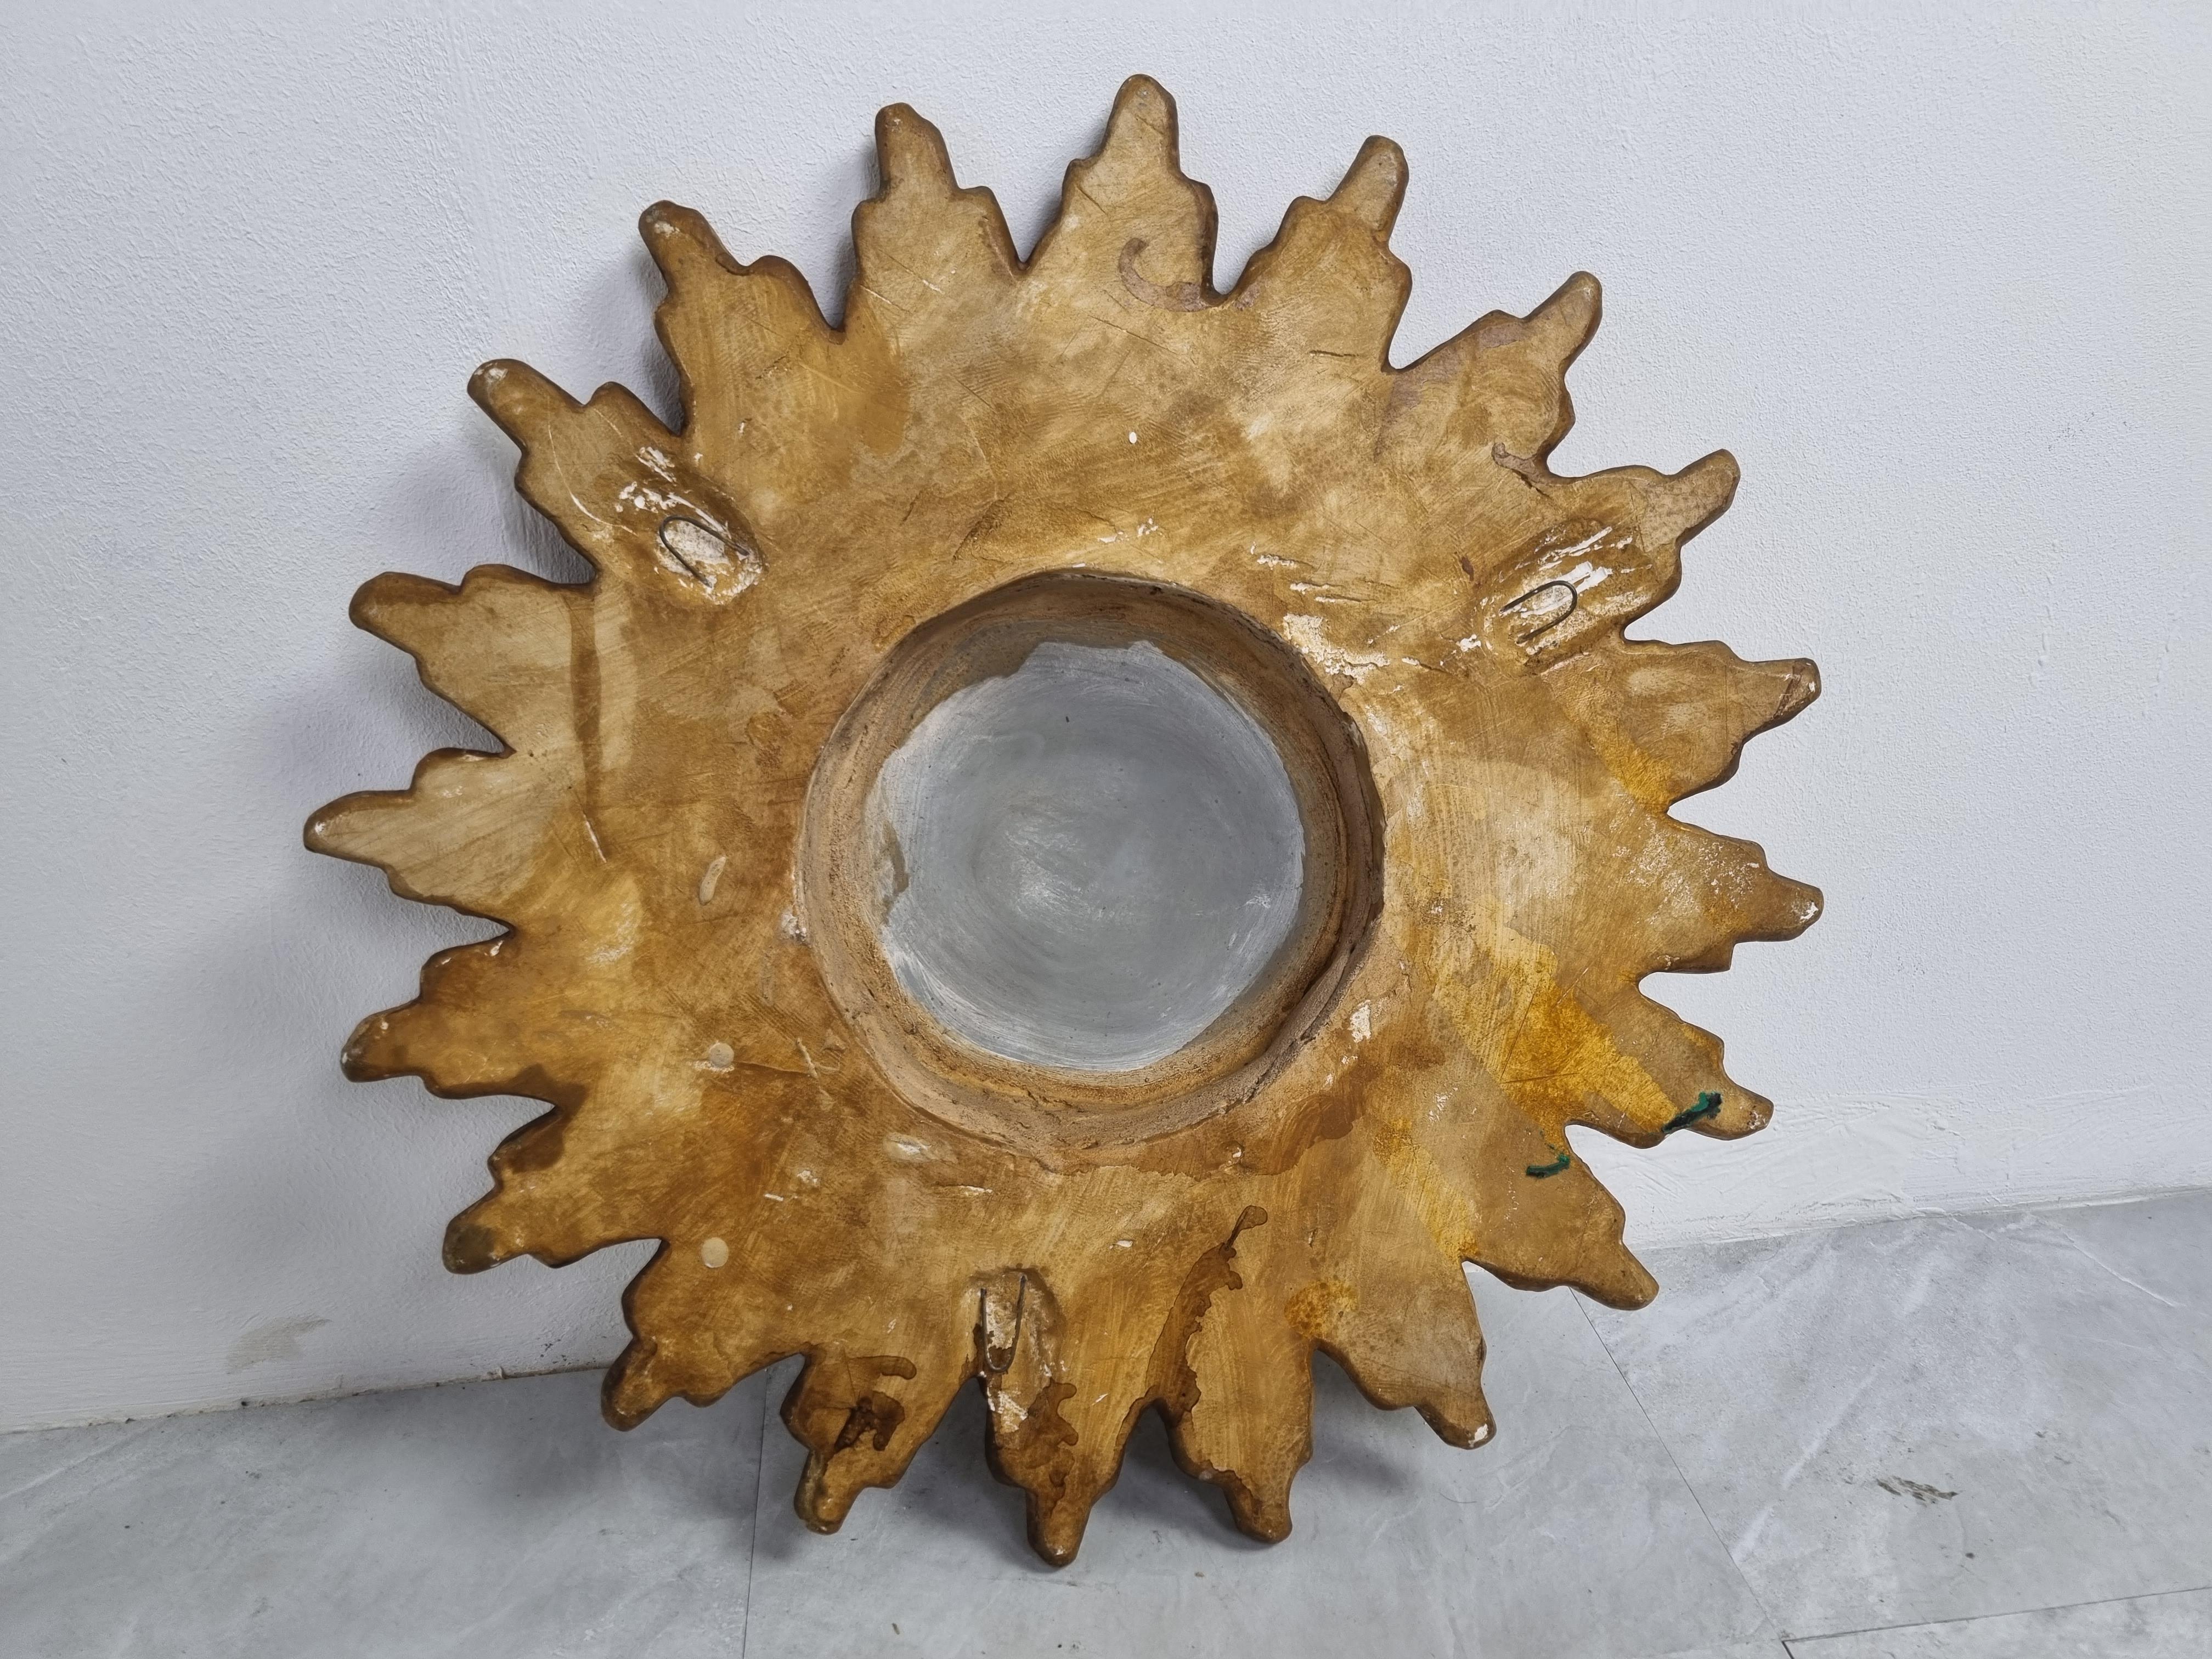 Seltener Terrakotta-Sonnenschliffspiegel mit konvexem Spiegelglas.

Der Spiegel ist in einem guten Vintage-Zustand.

1960er Jahre - Belgien

Abmessungen:

Durchmesser: 42cm/16.53